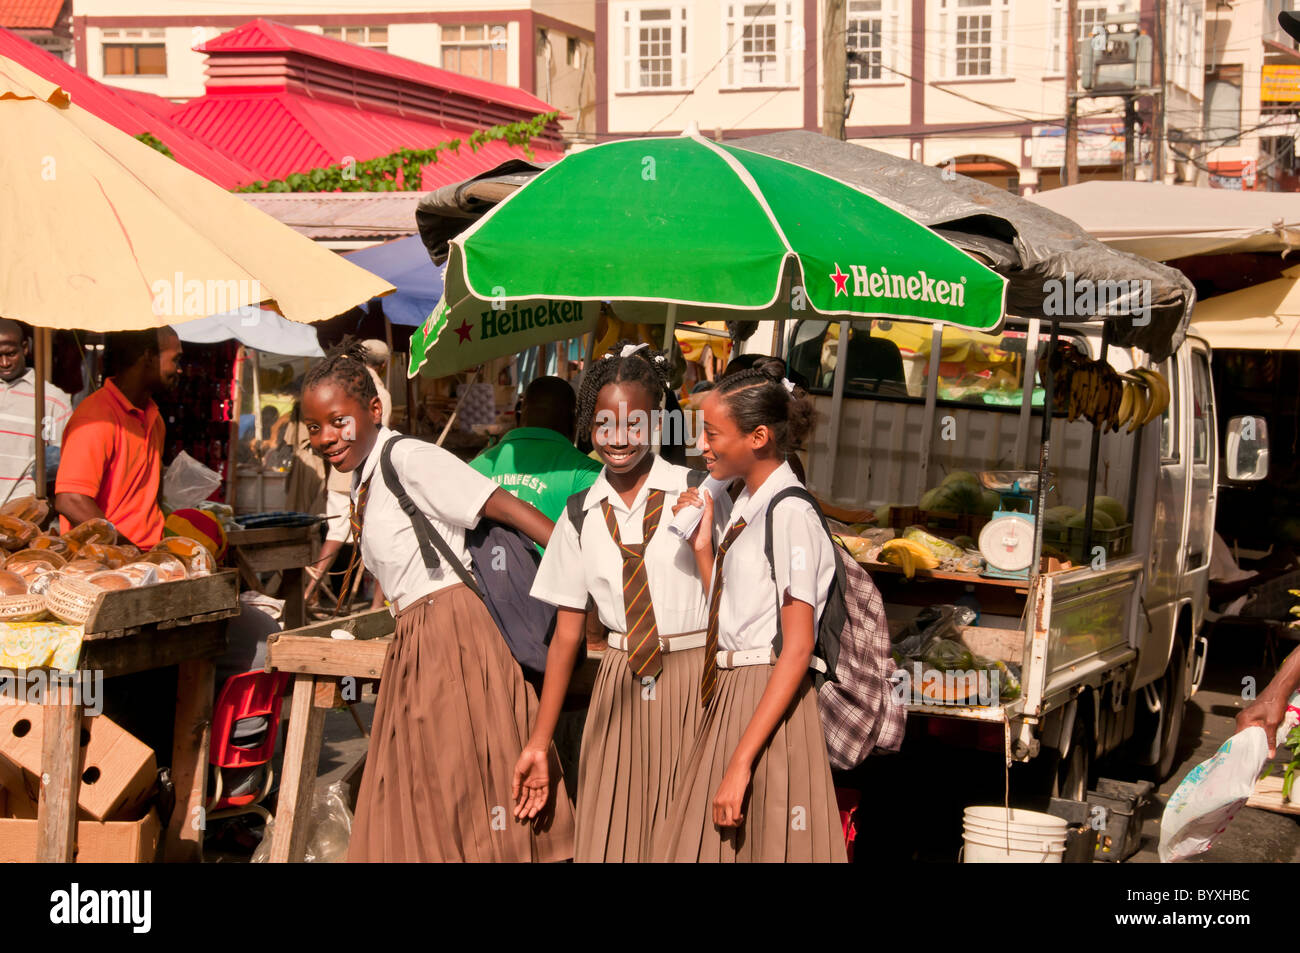 Schulmädchen in Uniform am produzieren Stand in der Innenstadt von St Georges, Grenada, Östliche Karibik Stockfoto